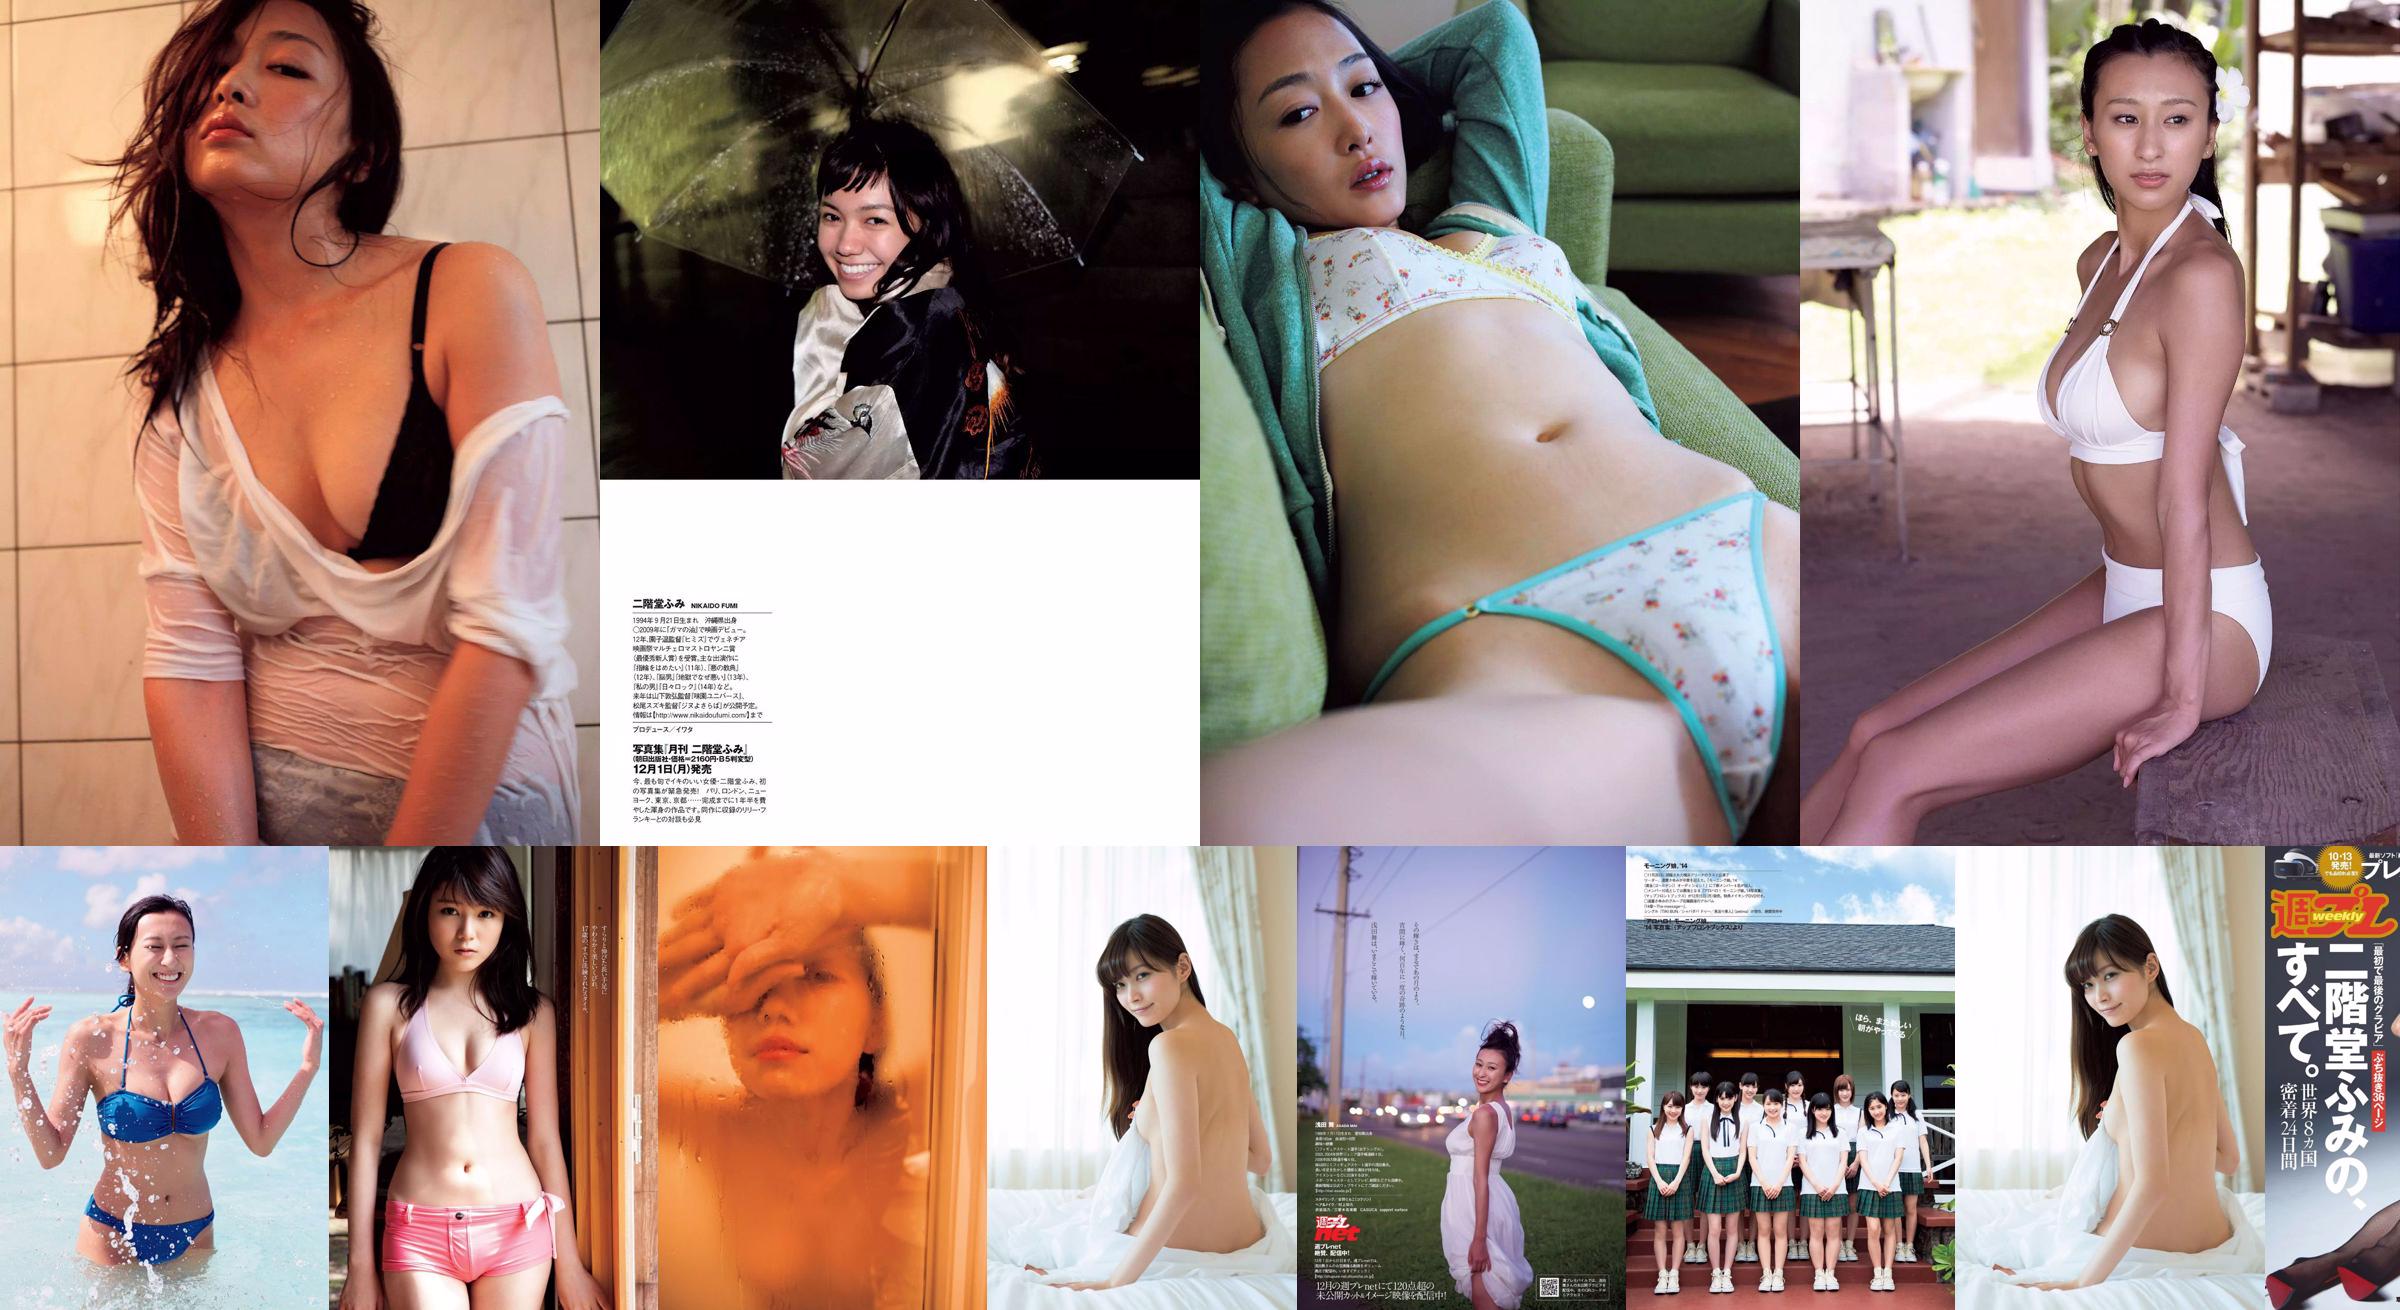 Fumi Nikaido [Playboy semanal] 2016 No.43 Photo Magazine No.76241a Página 1